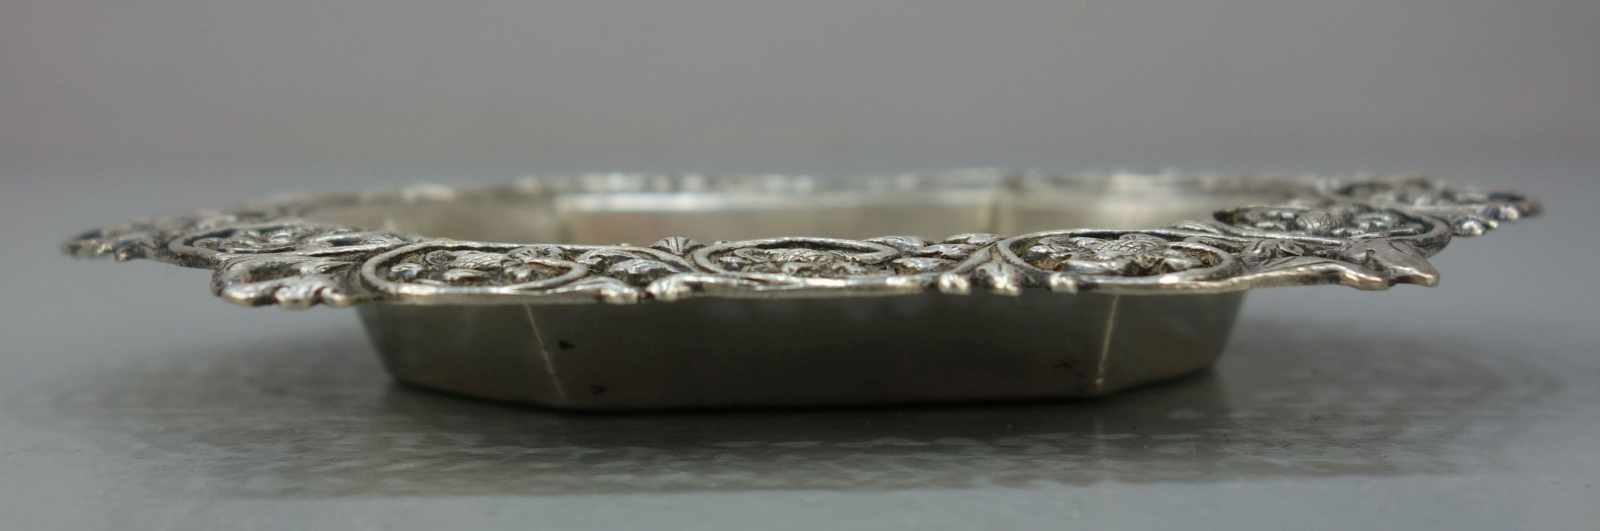 SILBERNE SCHALE / silver bowl, 800er Silber (70 g), gepunzt mit Feingehaltsangabe und - Image 2 of 3